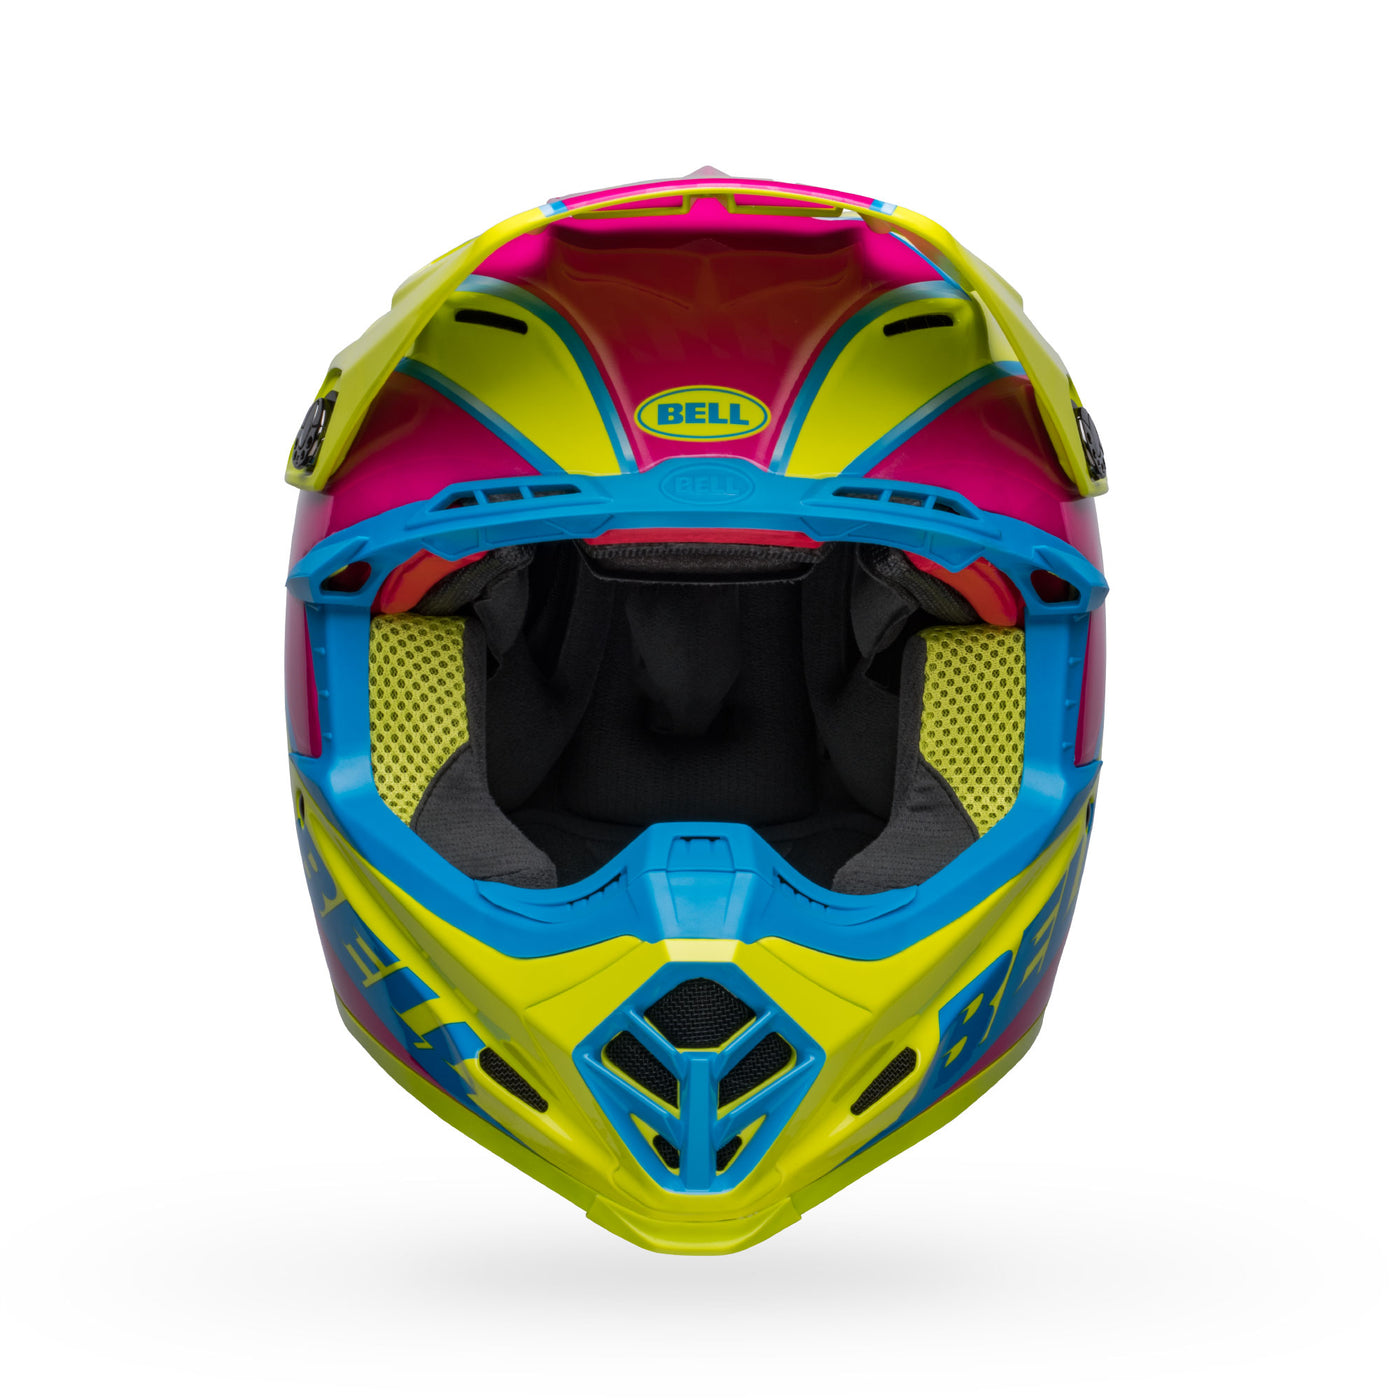 bell moto 9s flex dirt motorcycle helmet sprite gloss yellow magenta front